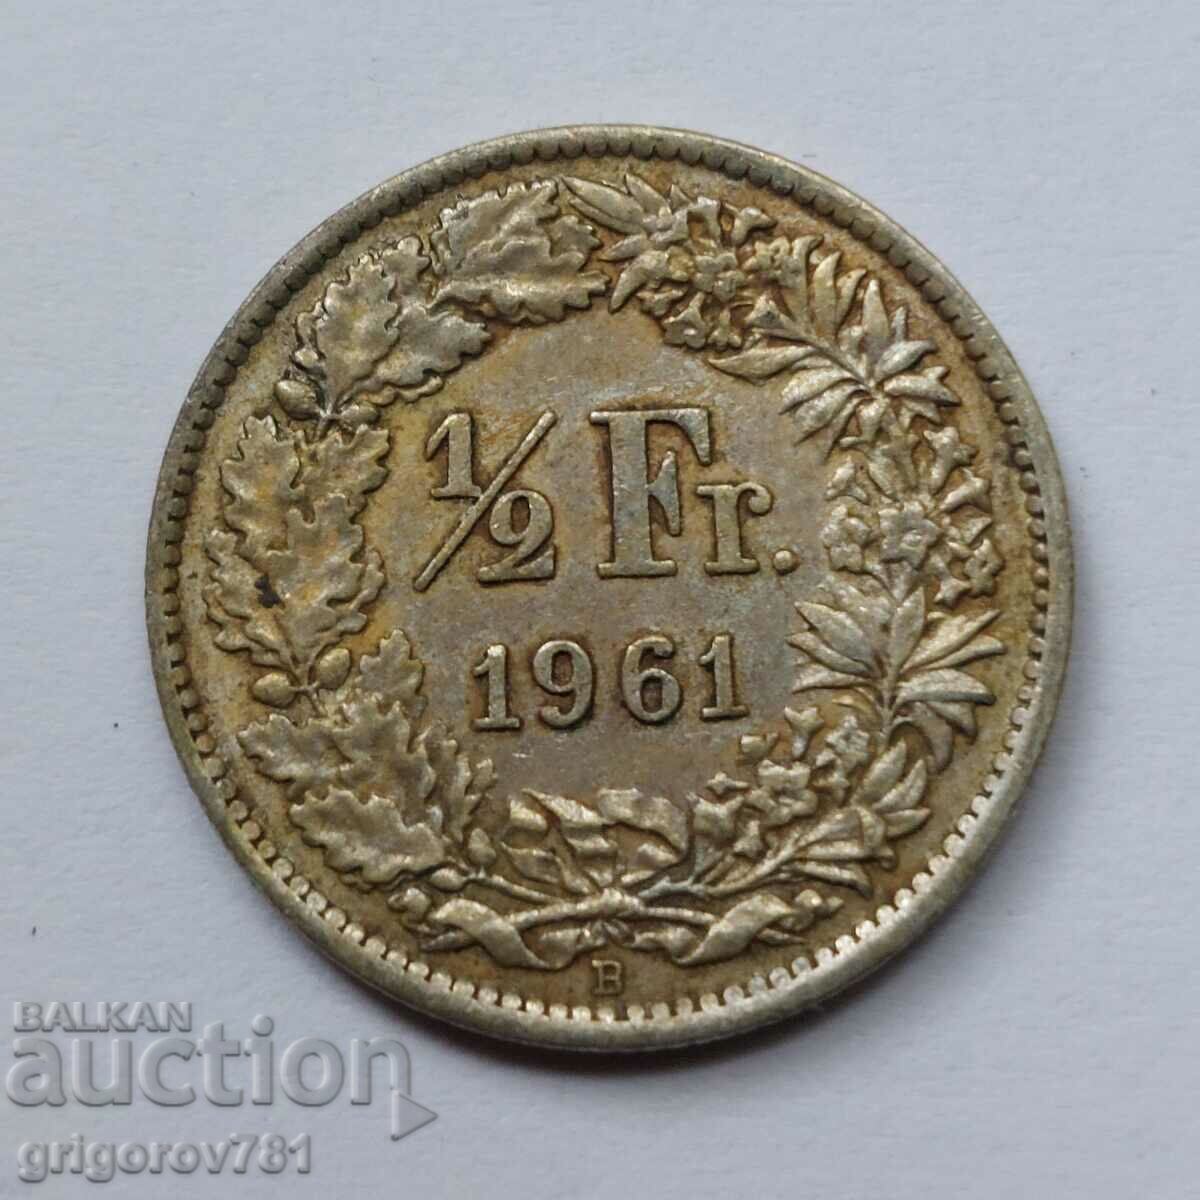 Ασημένιο φράγκο 1/2 Ελβετία 1961 Β - Ασημένιο νόμισμα #4